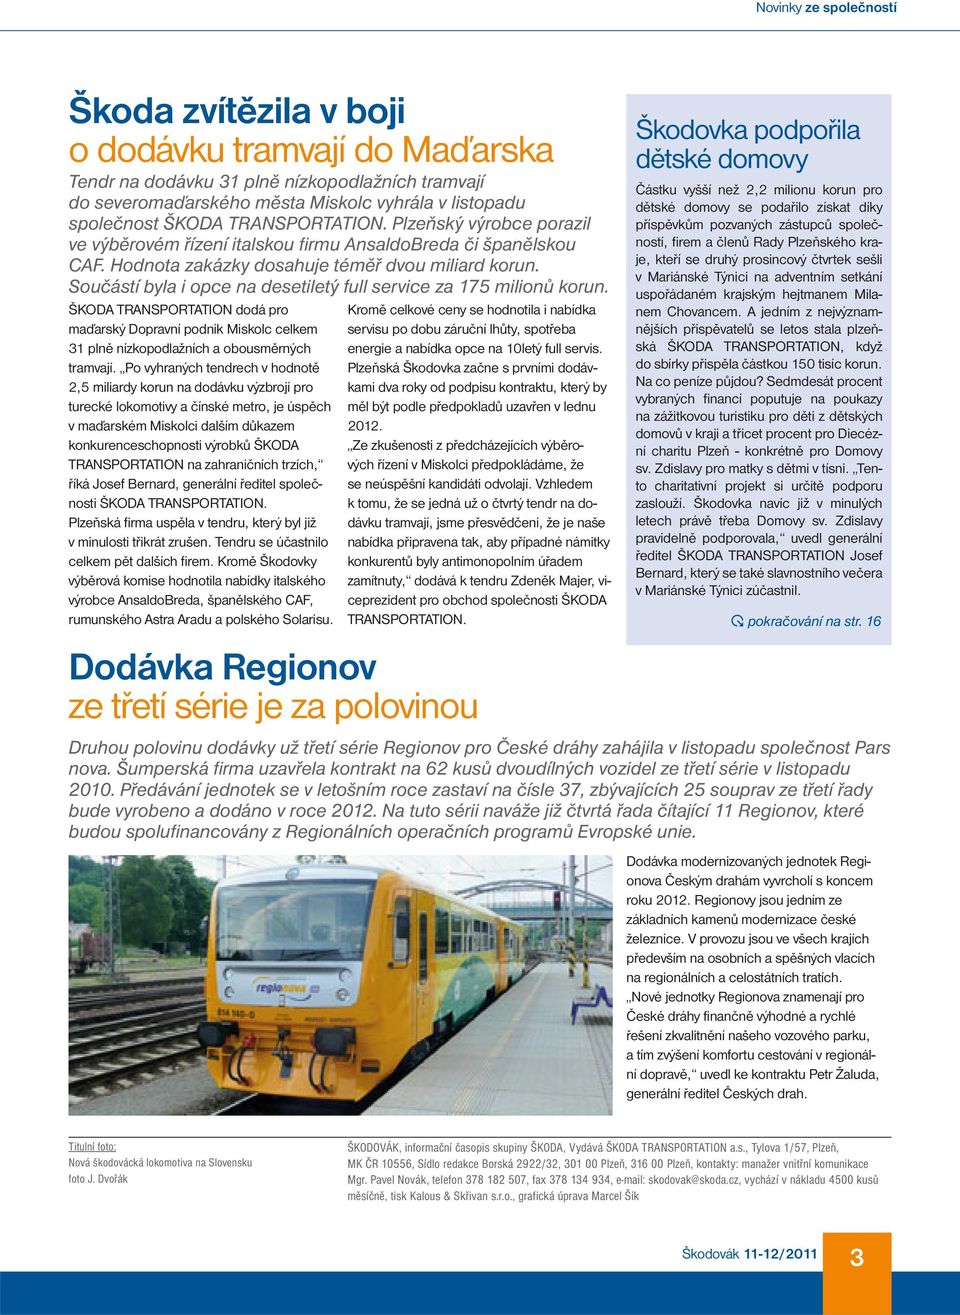 Součástí byla i opce na desetiletý full service za 175 milionů korun. ŠKODA TRANSPORTATION dodá pro maďarský Dopravní podnik Miskolc celkem 31 plně nízkopodlažních a obousměrných tramvají.